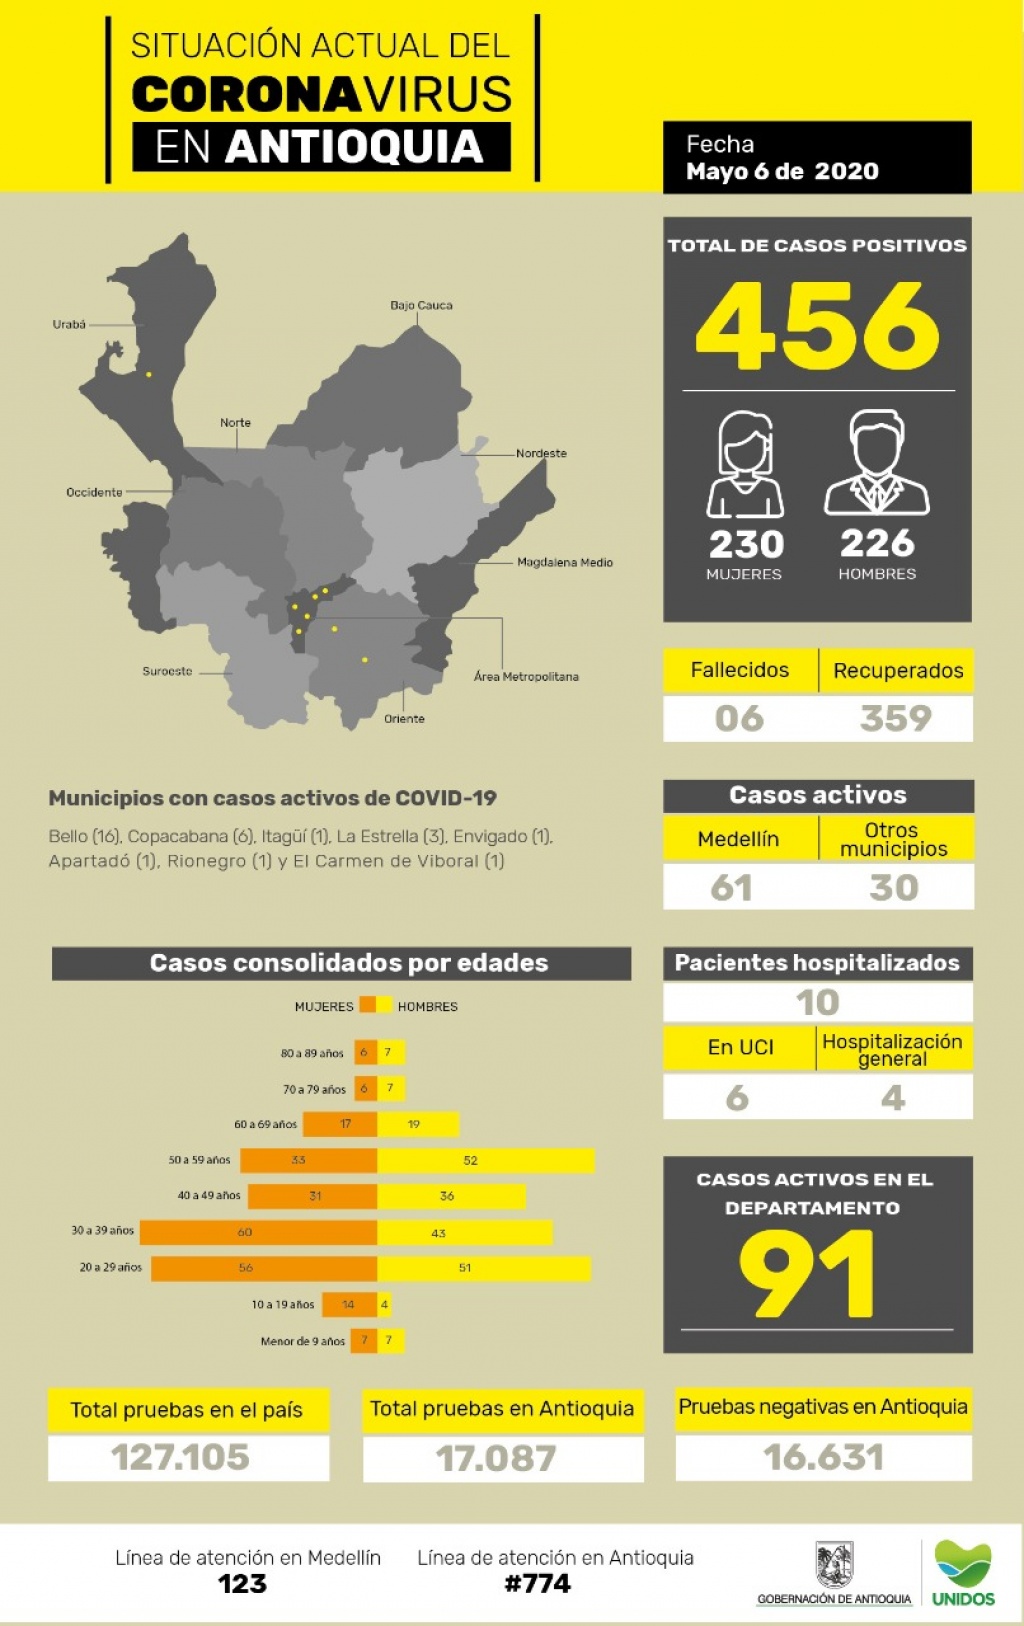 Con 5 nuevos casos reportados, el número total de personas contagiadas por la COVID-19 en Antioquia llega a 456